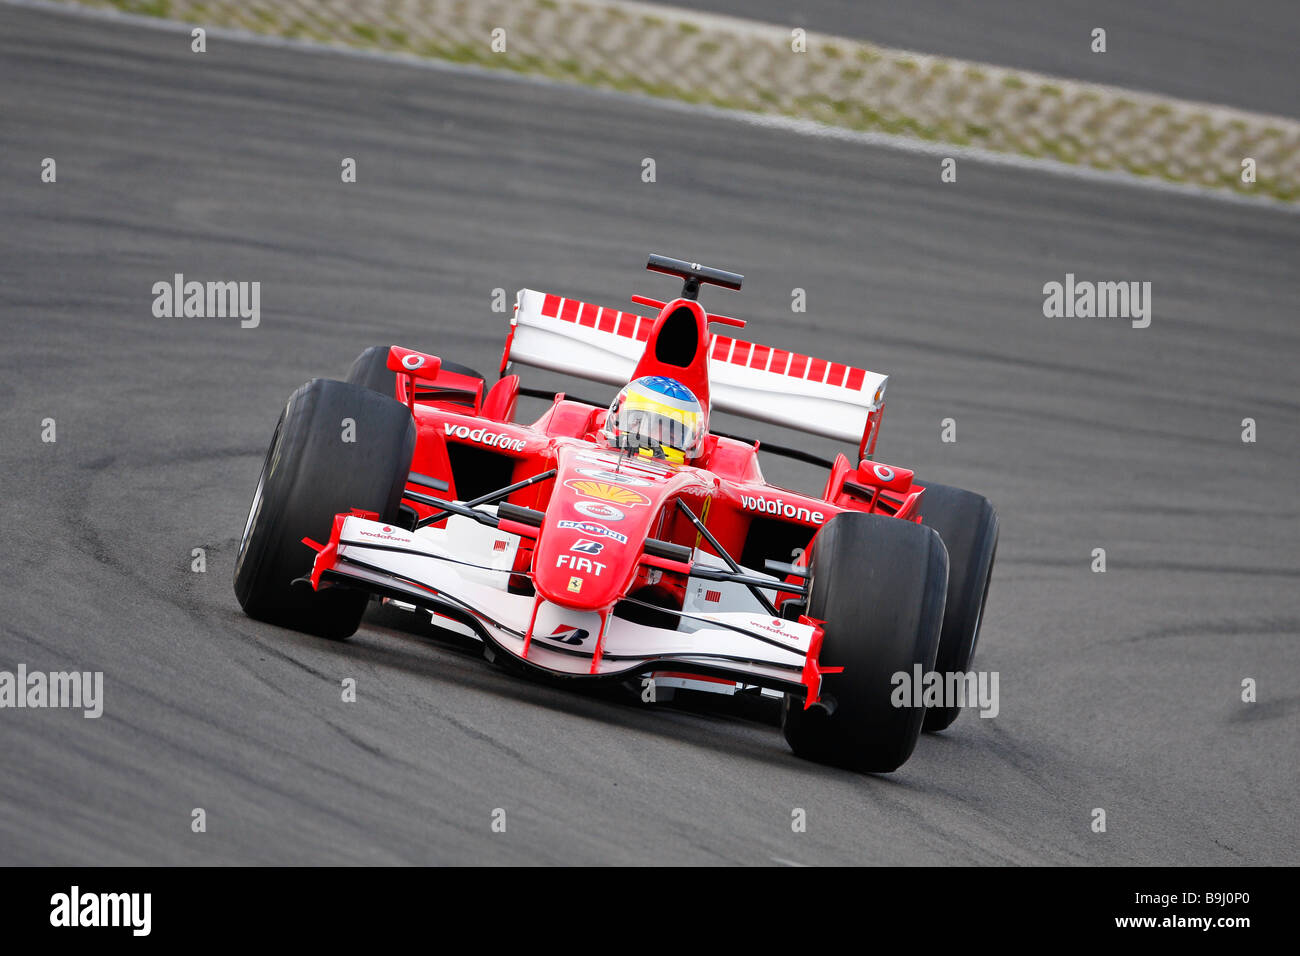 Formule 1 Ferrari F248, modèle 2006, Ferrari Days 2008, Nürburgring, Rhénanie-Palatinat, Allemagne, Europe Banque D'Images